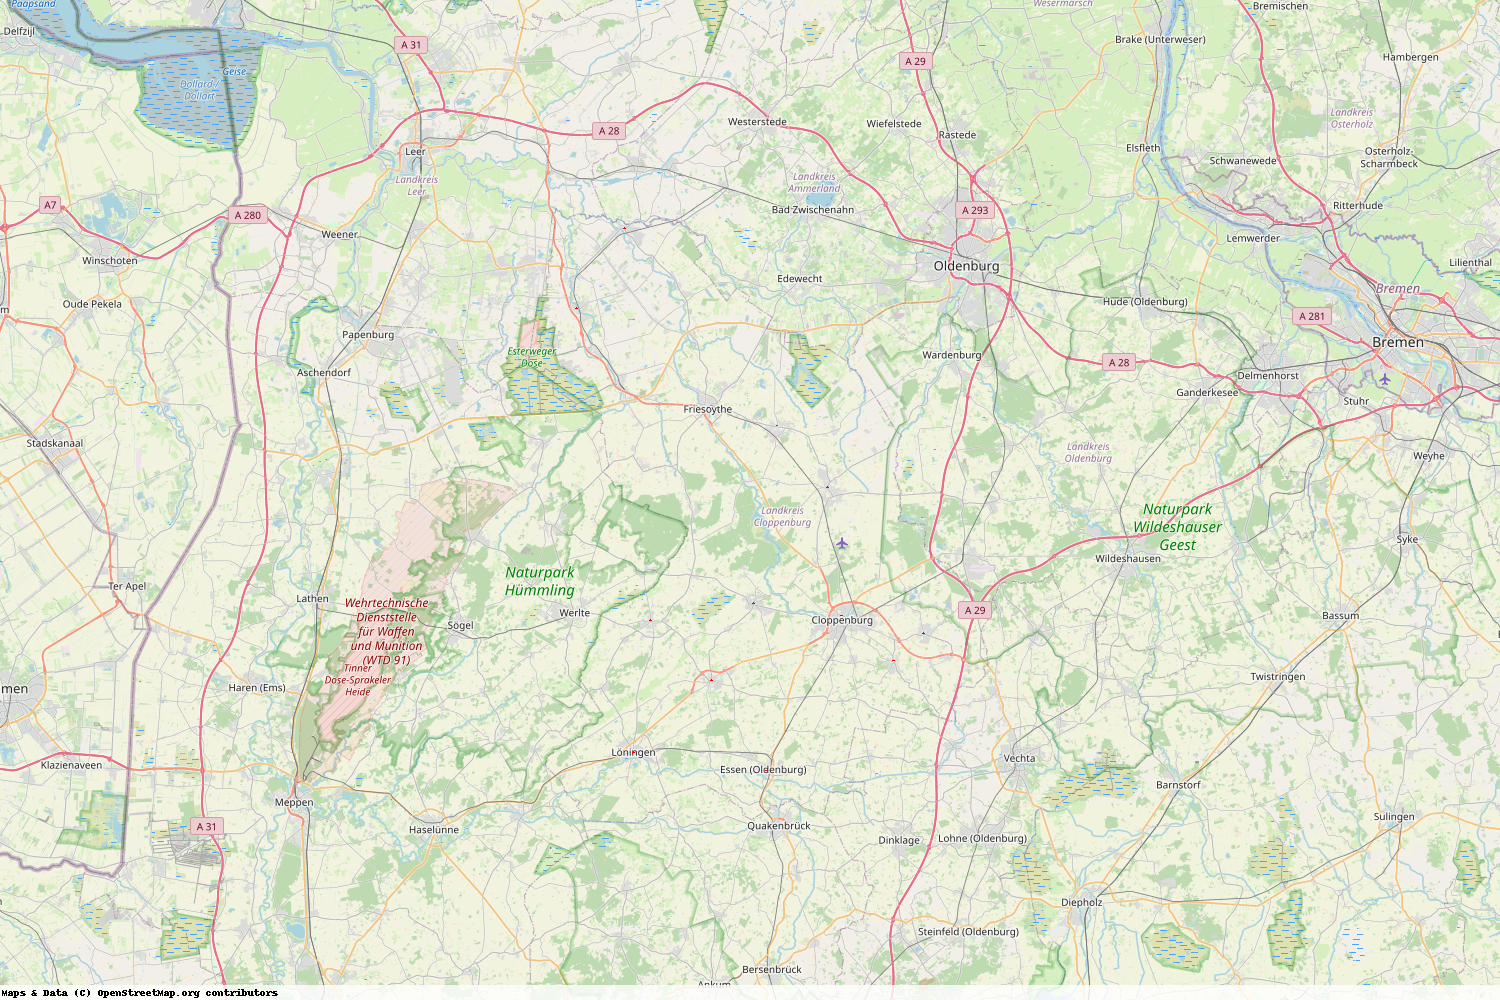 Ist gerade Stromausfall in Niedersachsen - Cloppenburg?